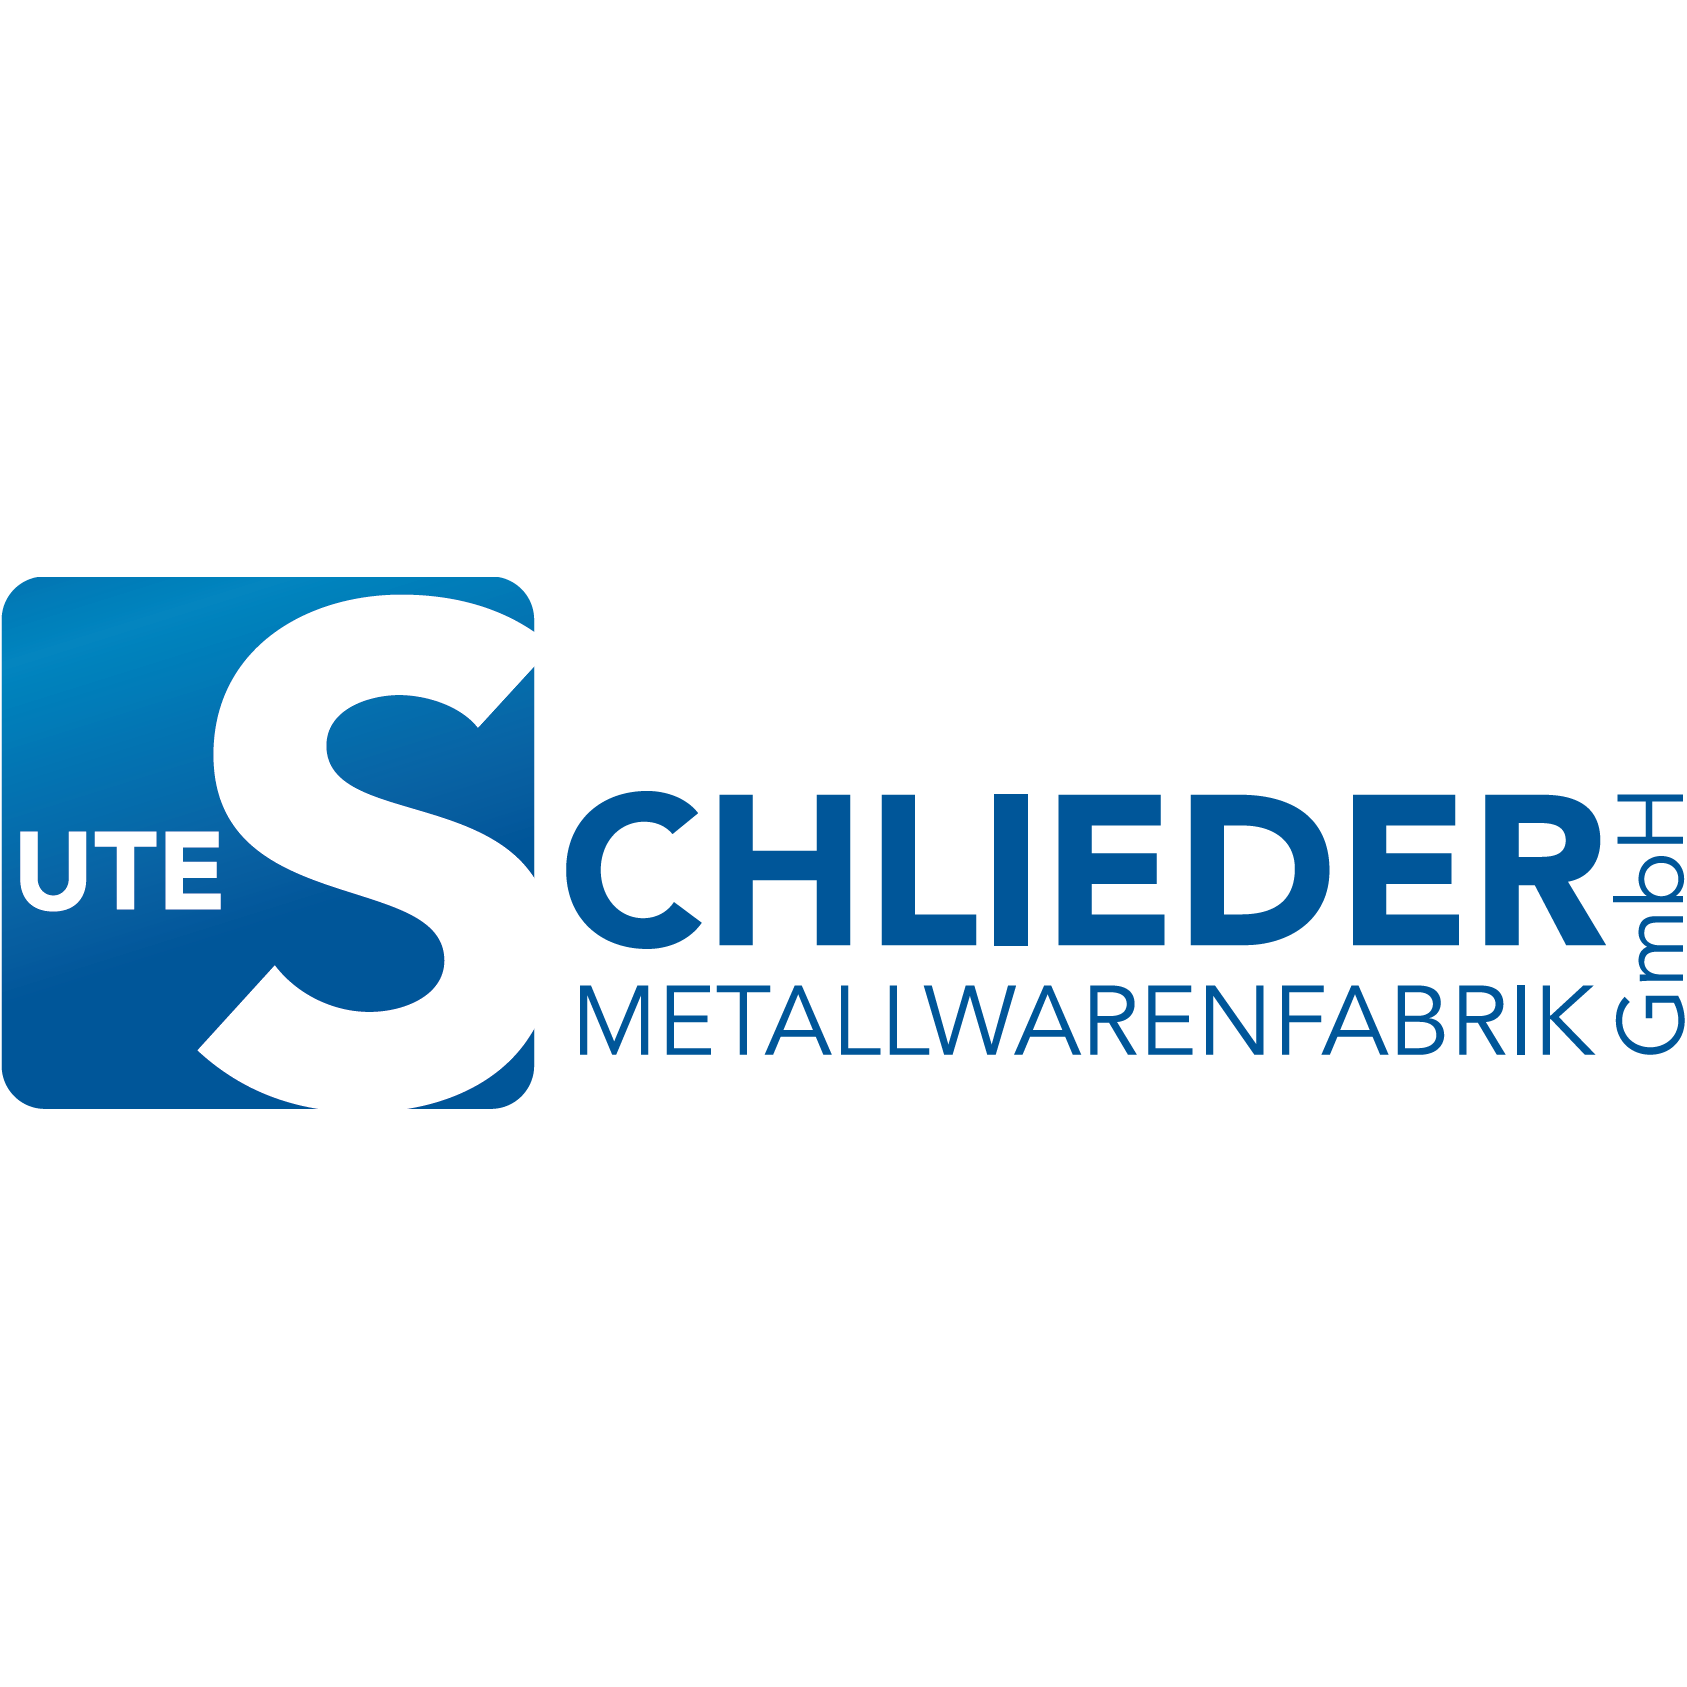 Ute Schlieder Metallwarenfabrik GmbH in Marienberg in Sachsen - Logo